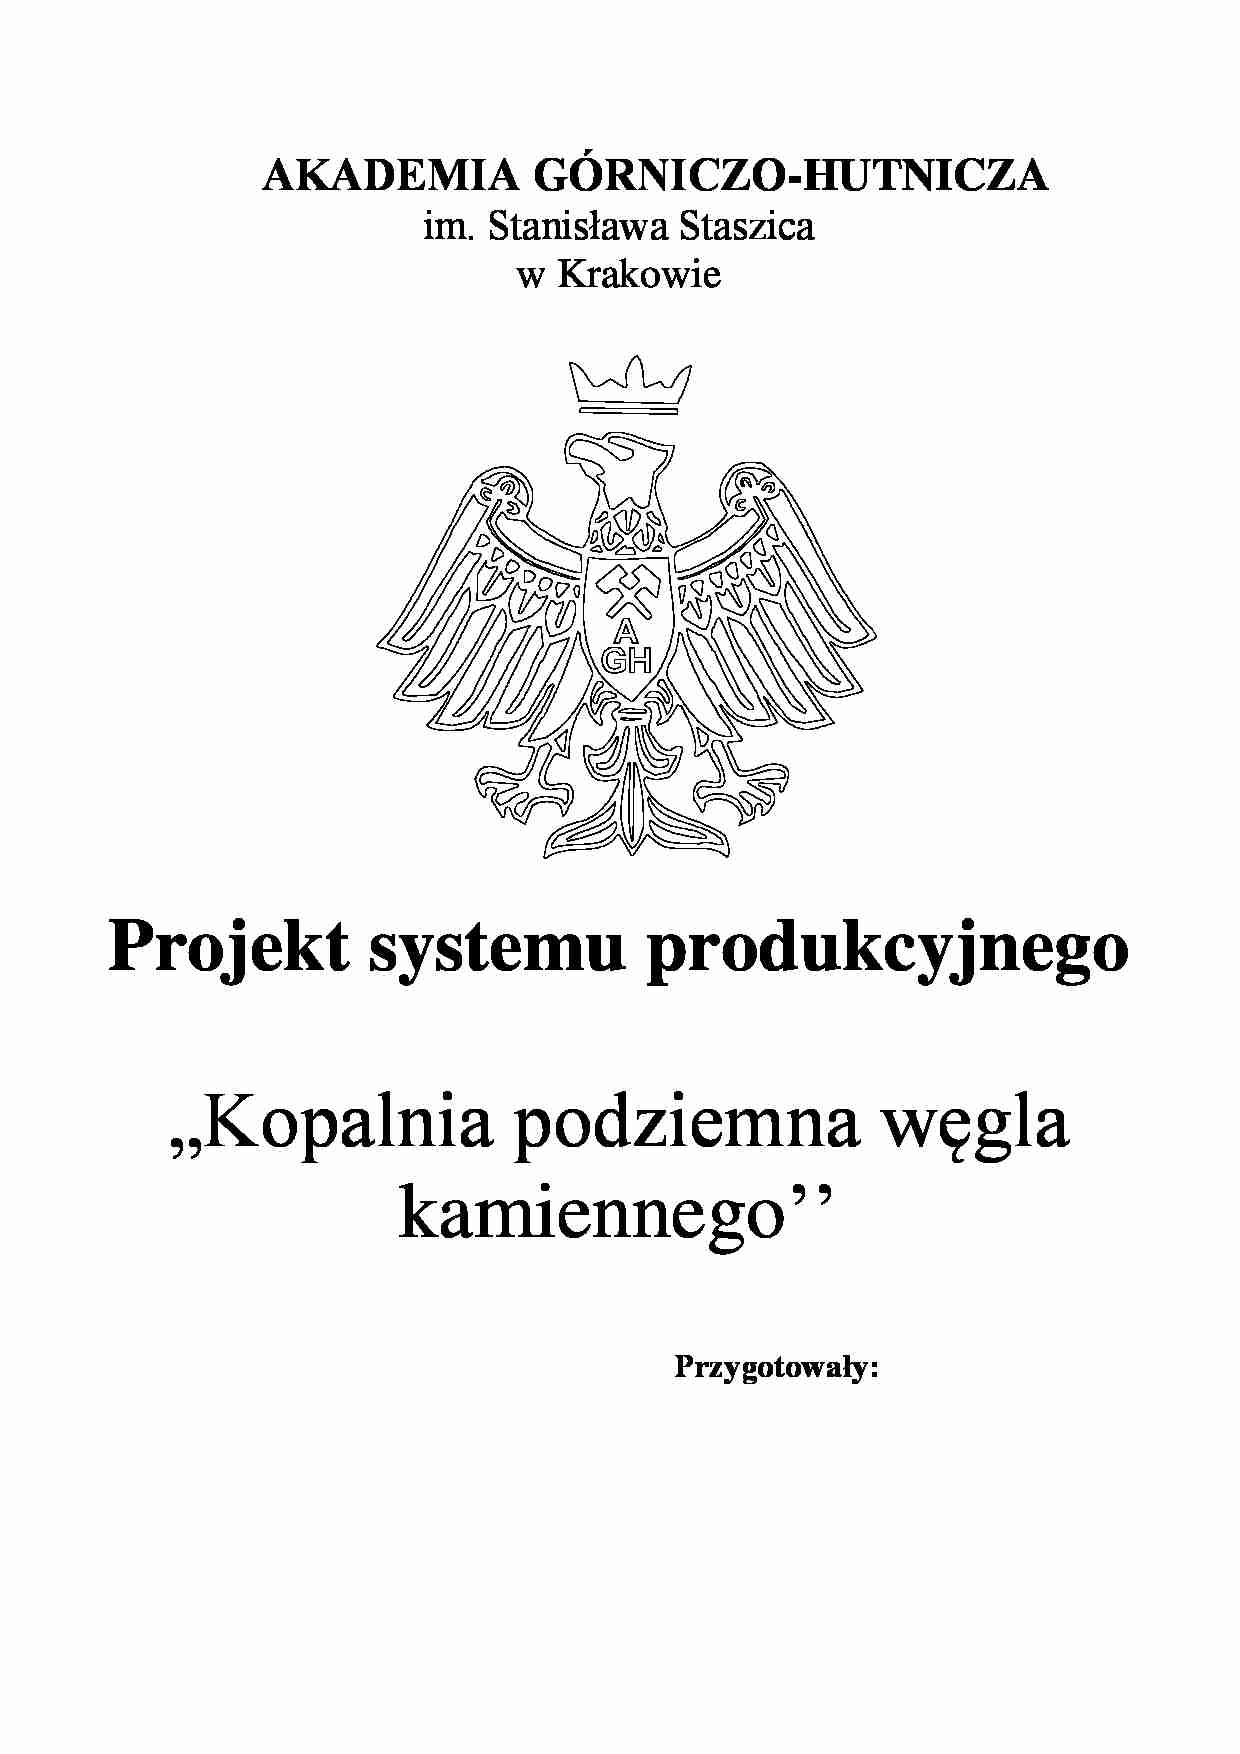 Projekt systemu produkcyjnego - projekt - strona 1